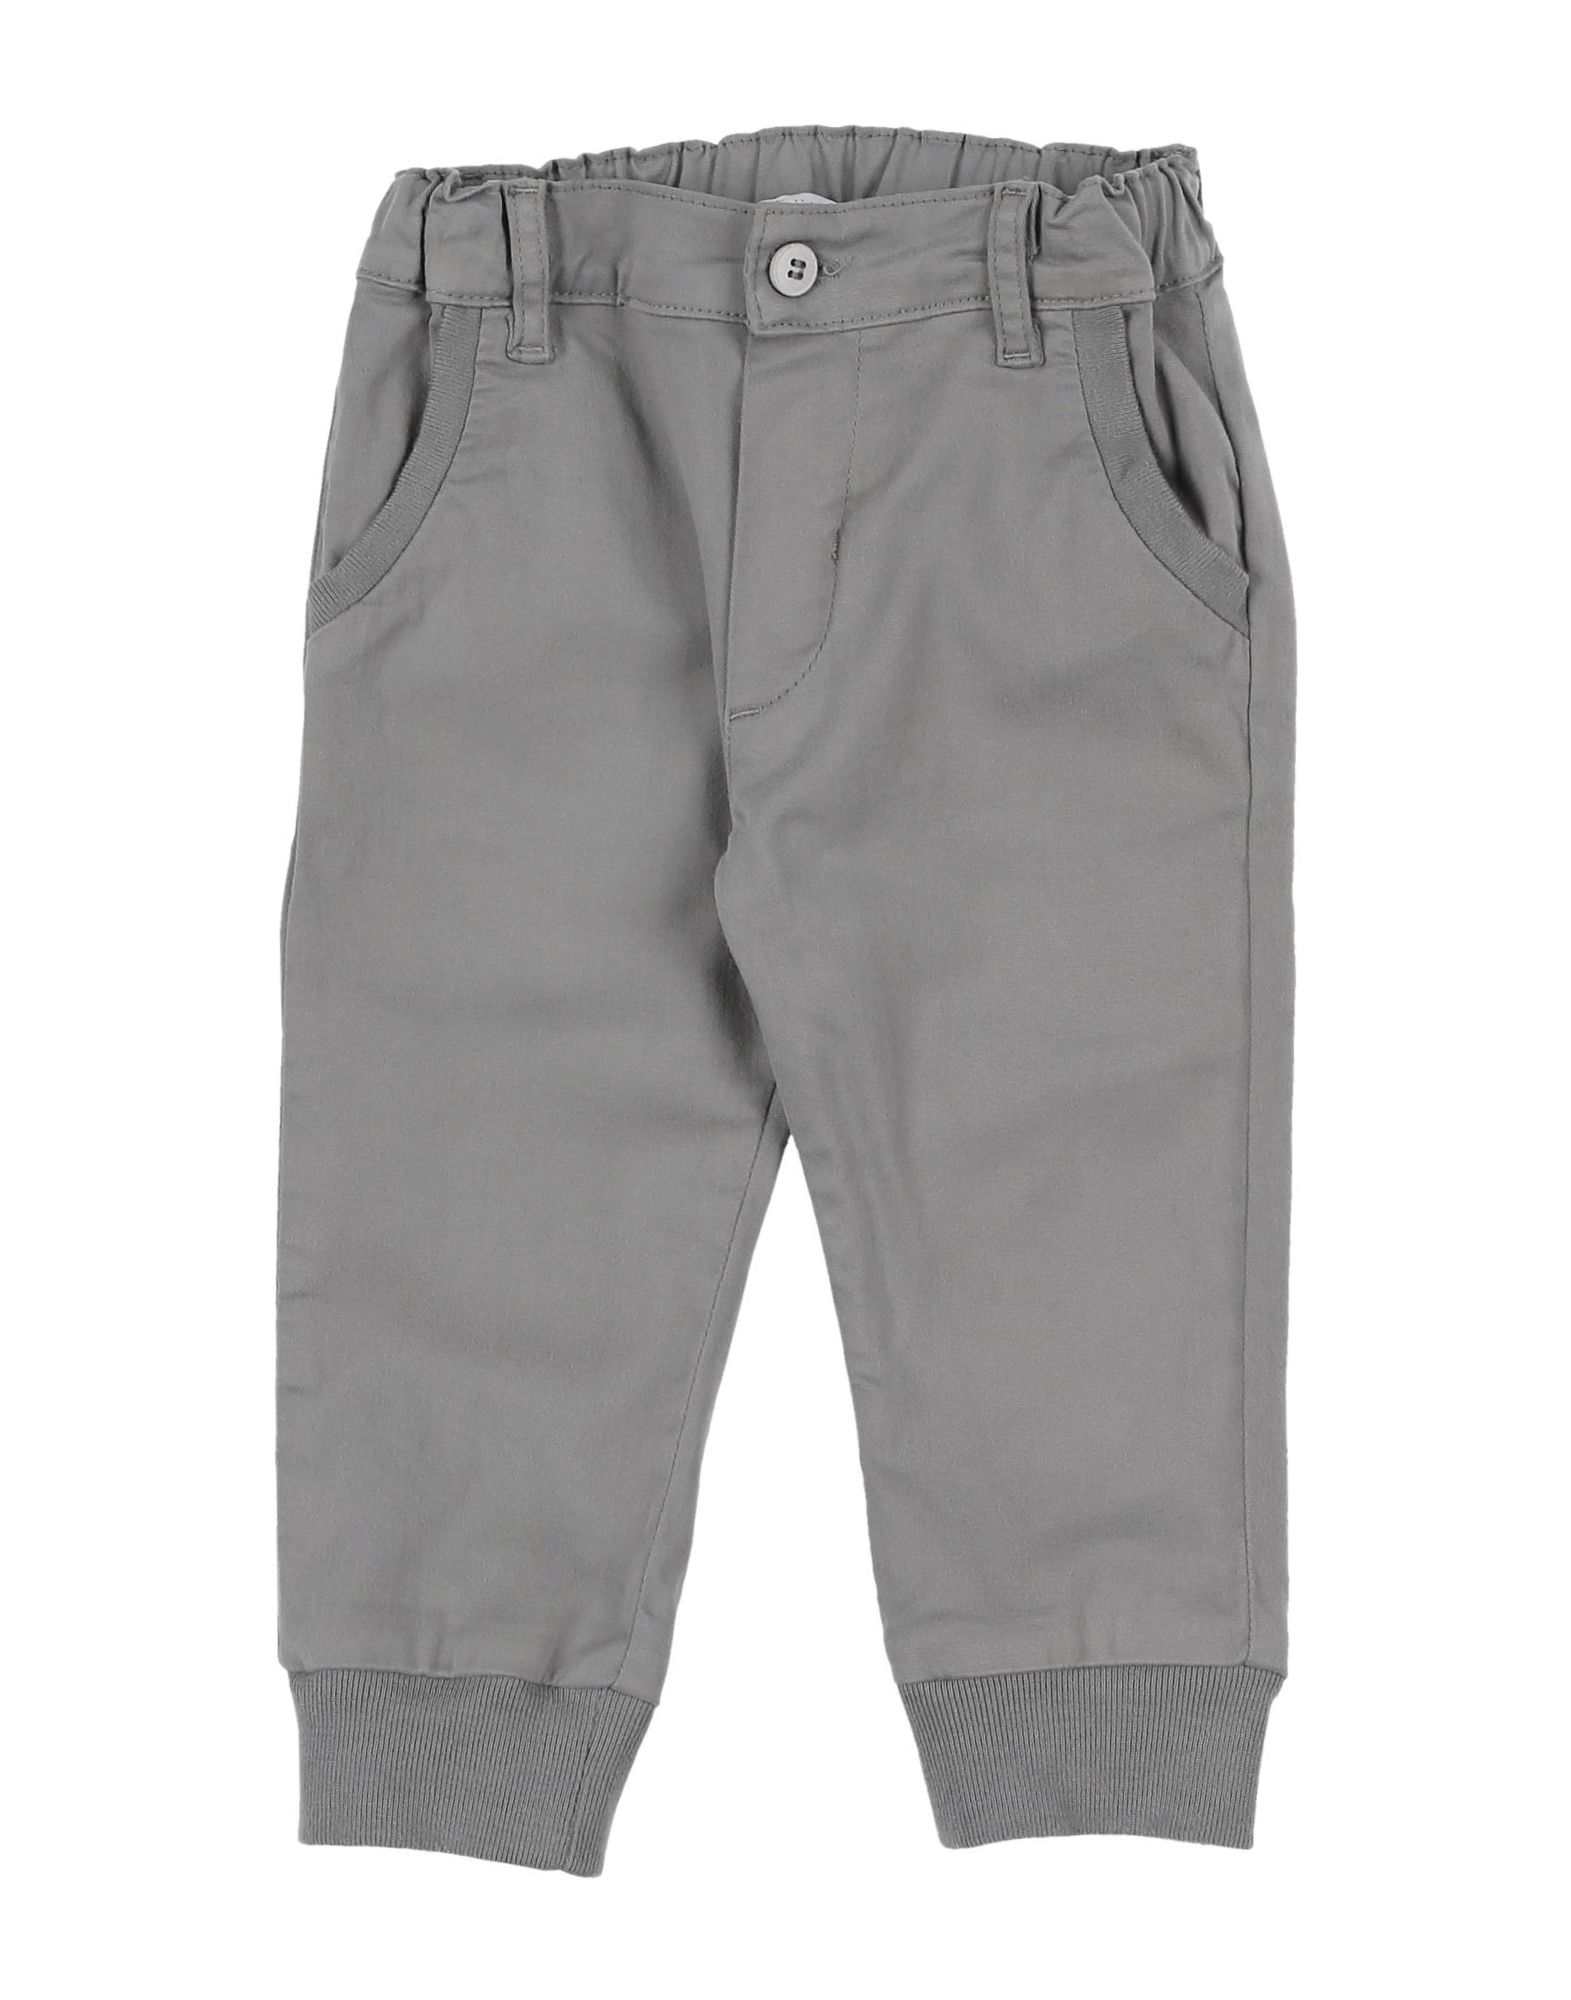 Per Te" Kids' Pants In Grey